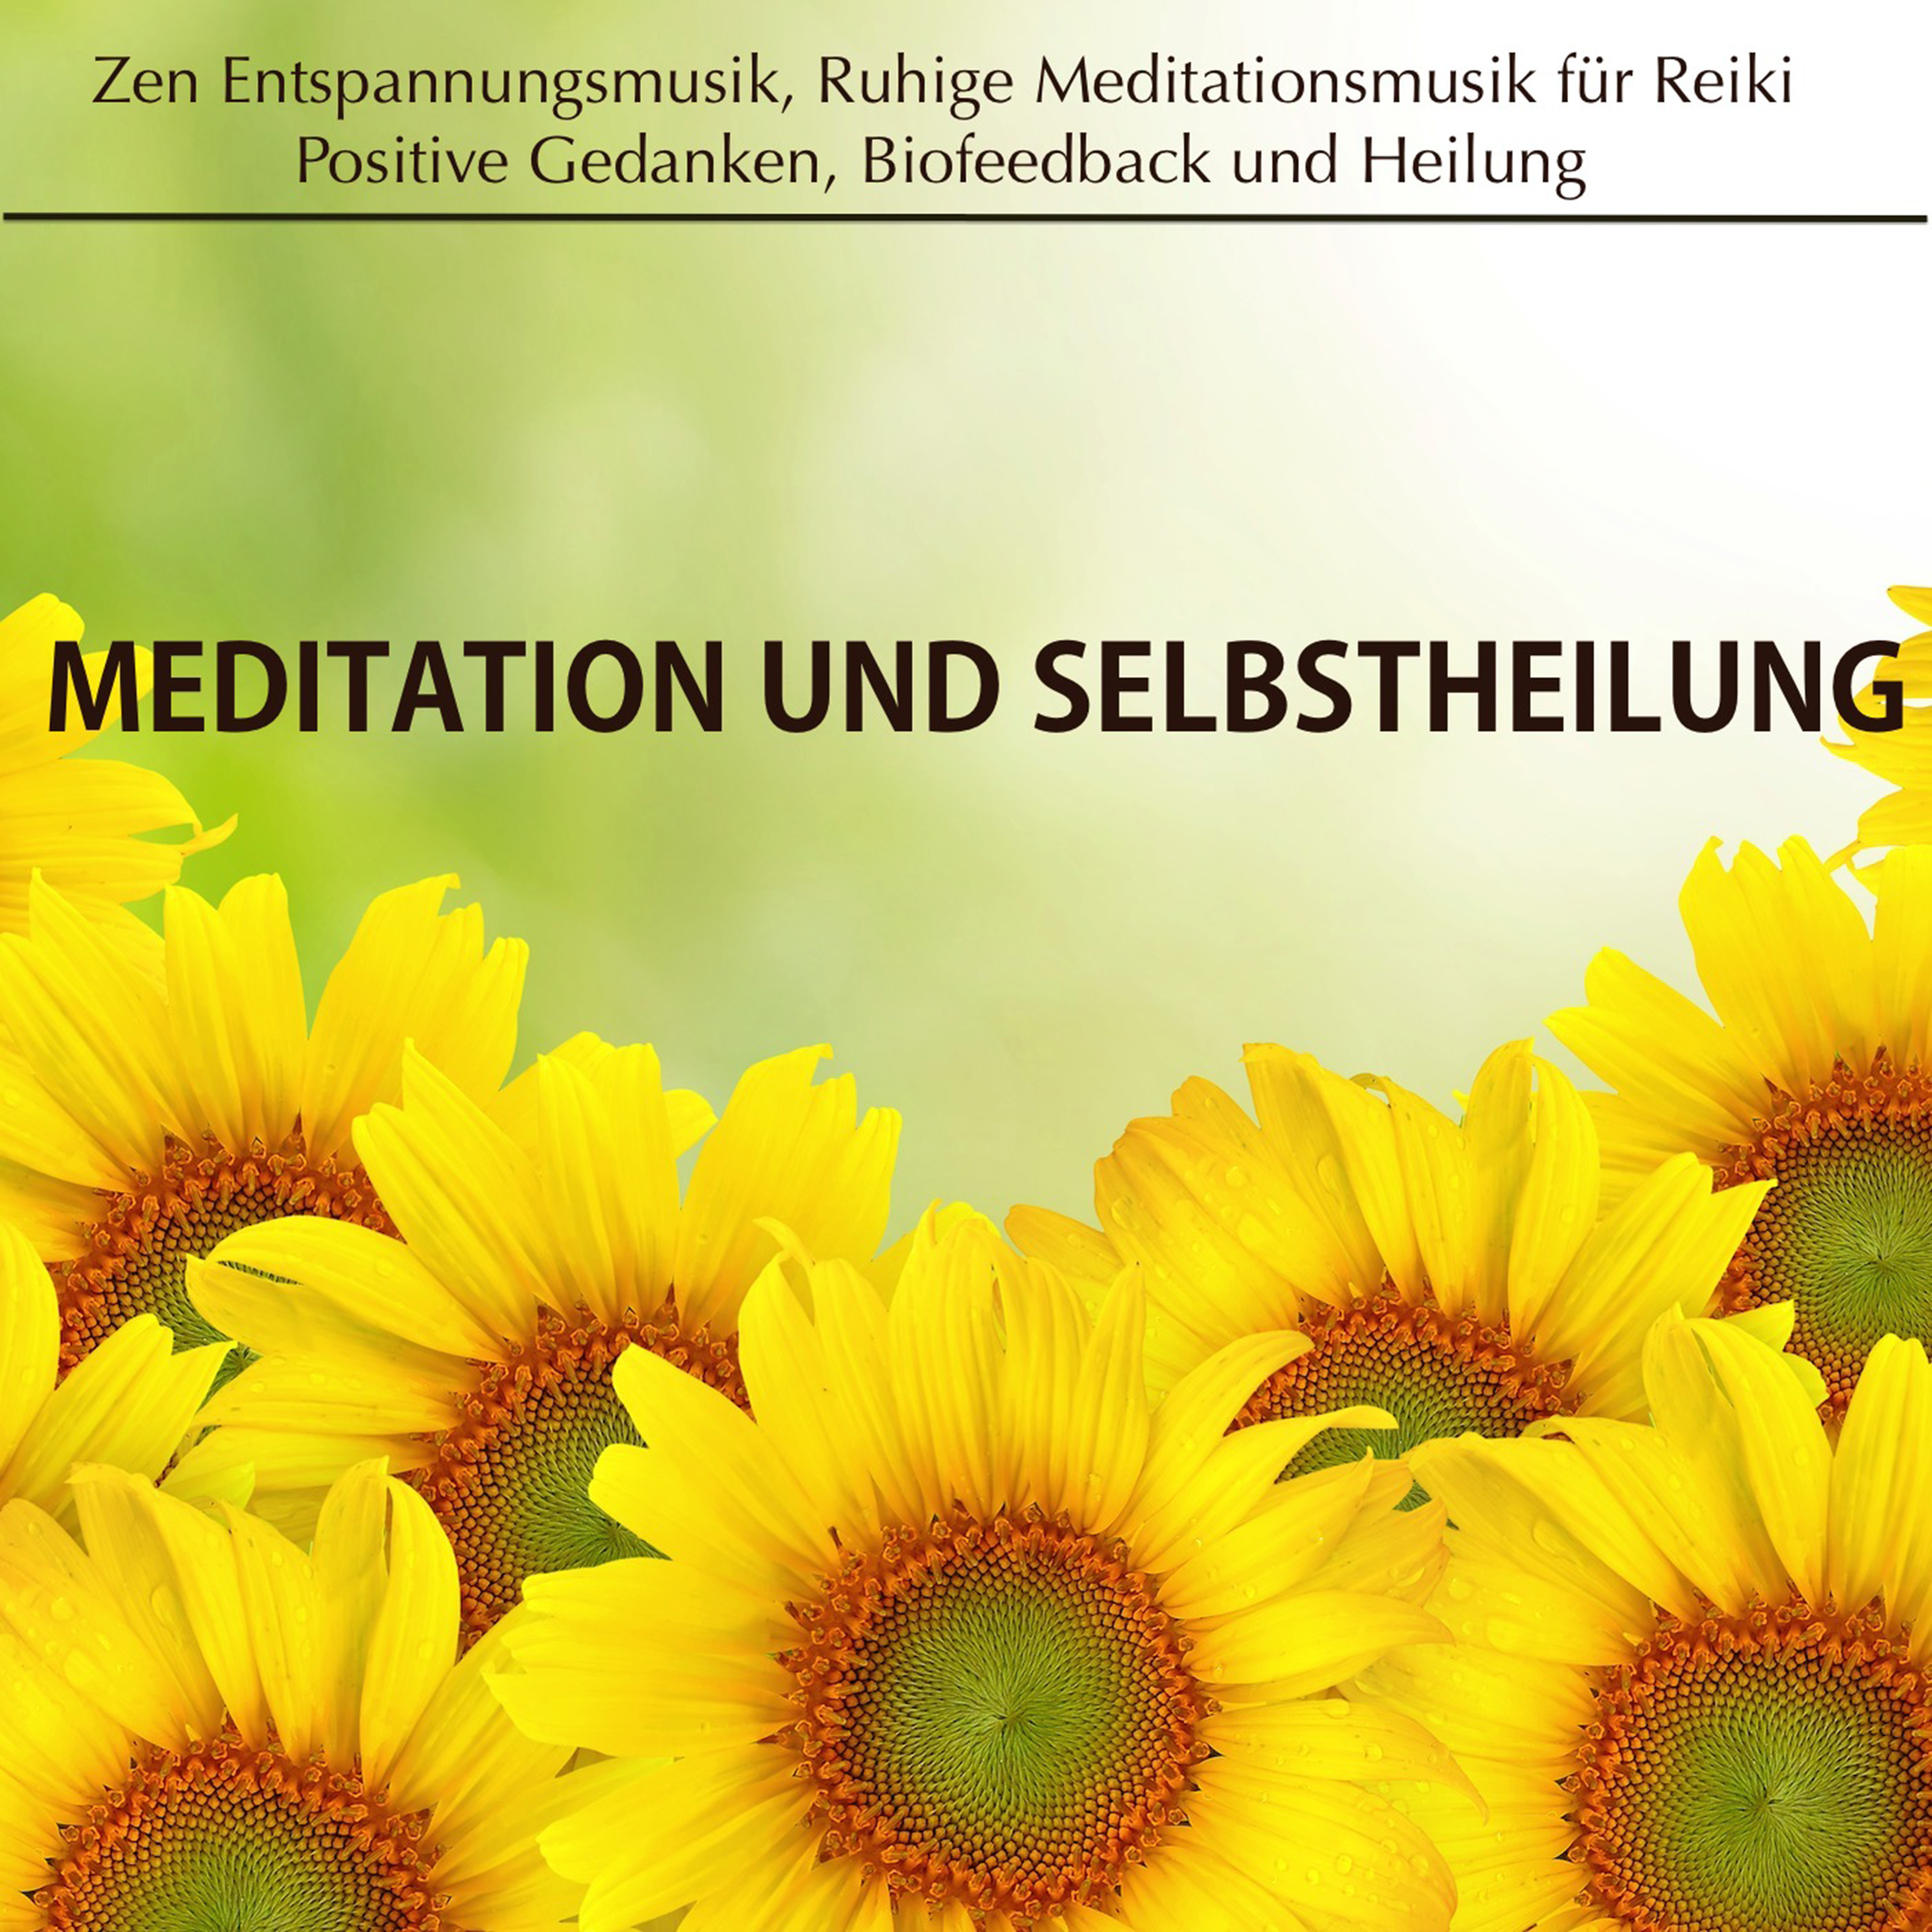 Meditation und Selbstheilung: Zen Entspannungsmusik, Ruhige Meditationsmusik fü r Reiki, Positive Gedanken, Biofeedback und Heilung